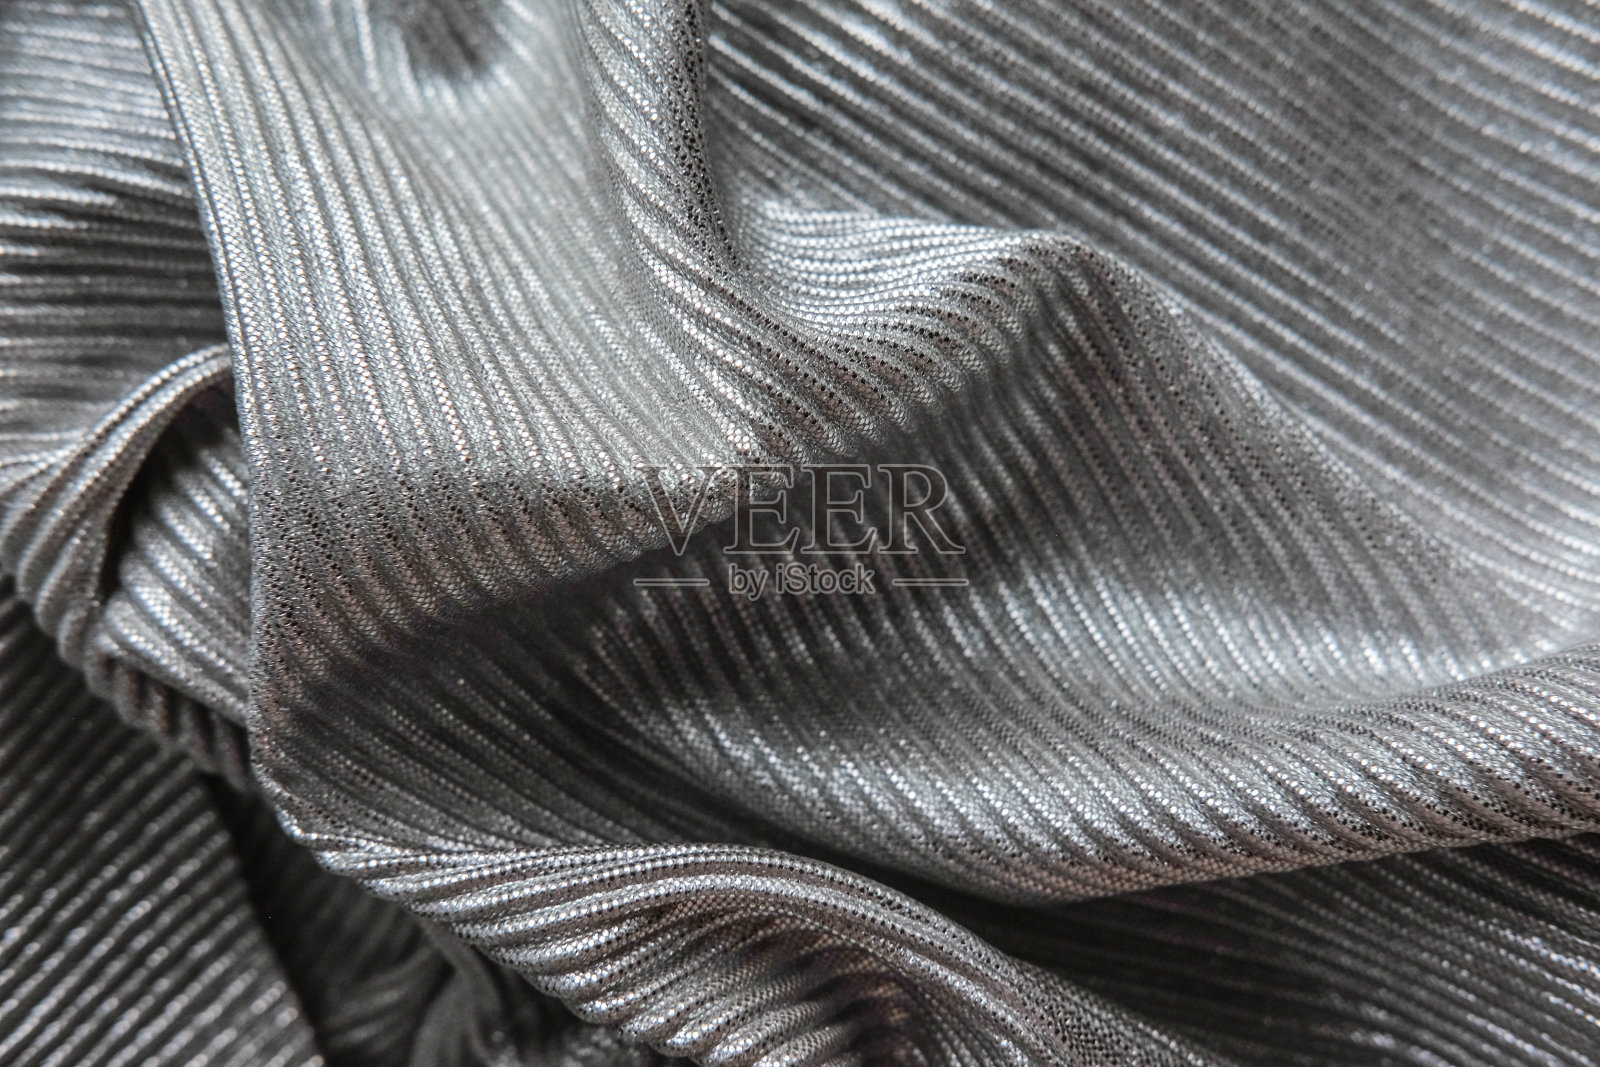 银色的织物呈波浪状排列。黑白帆布材质的纺织品。照片摄影图片